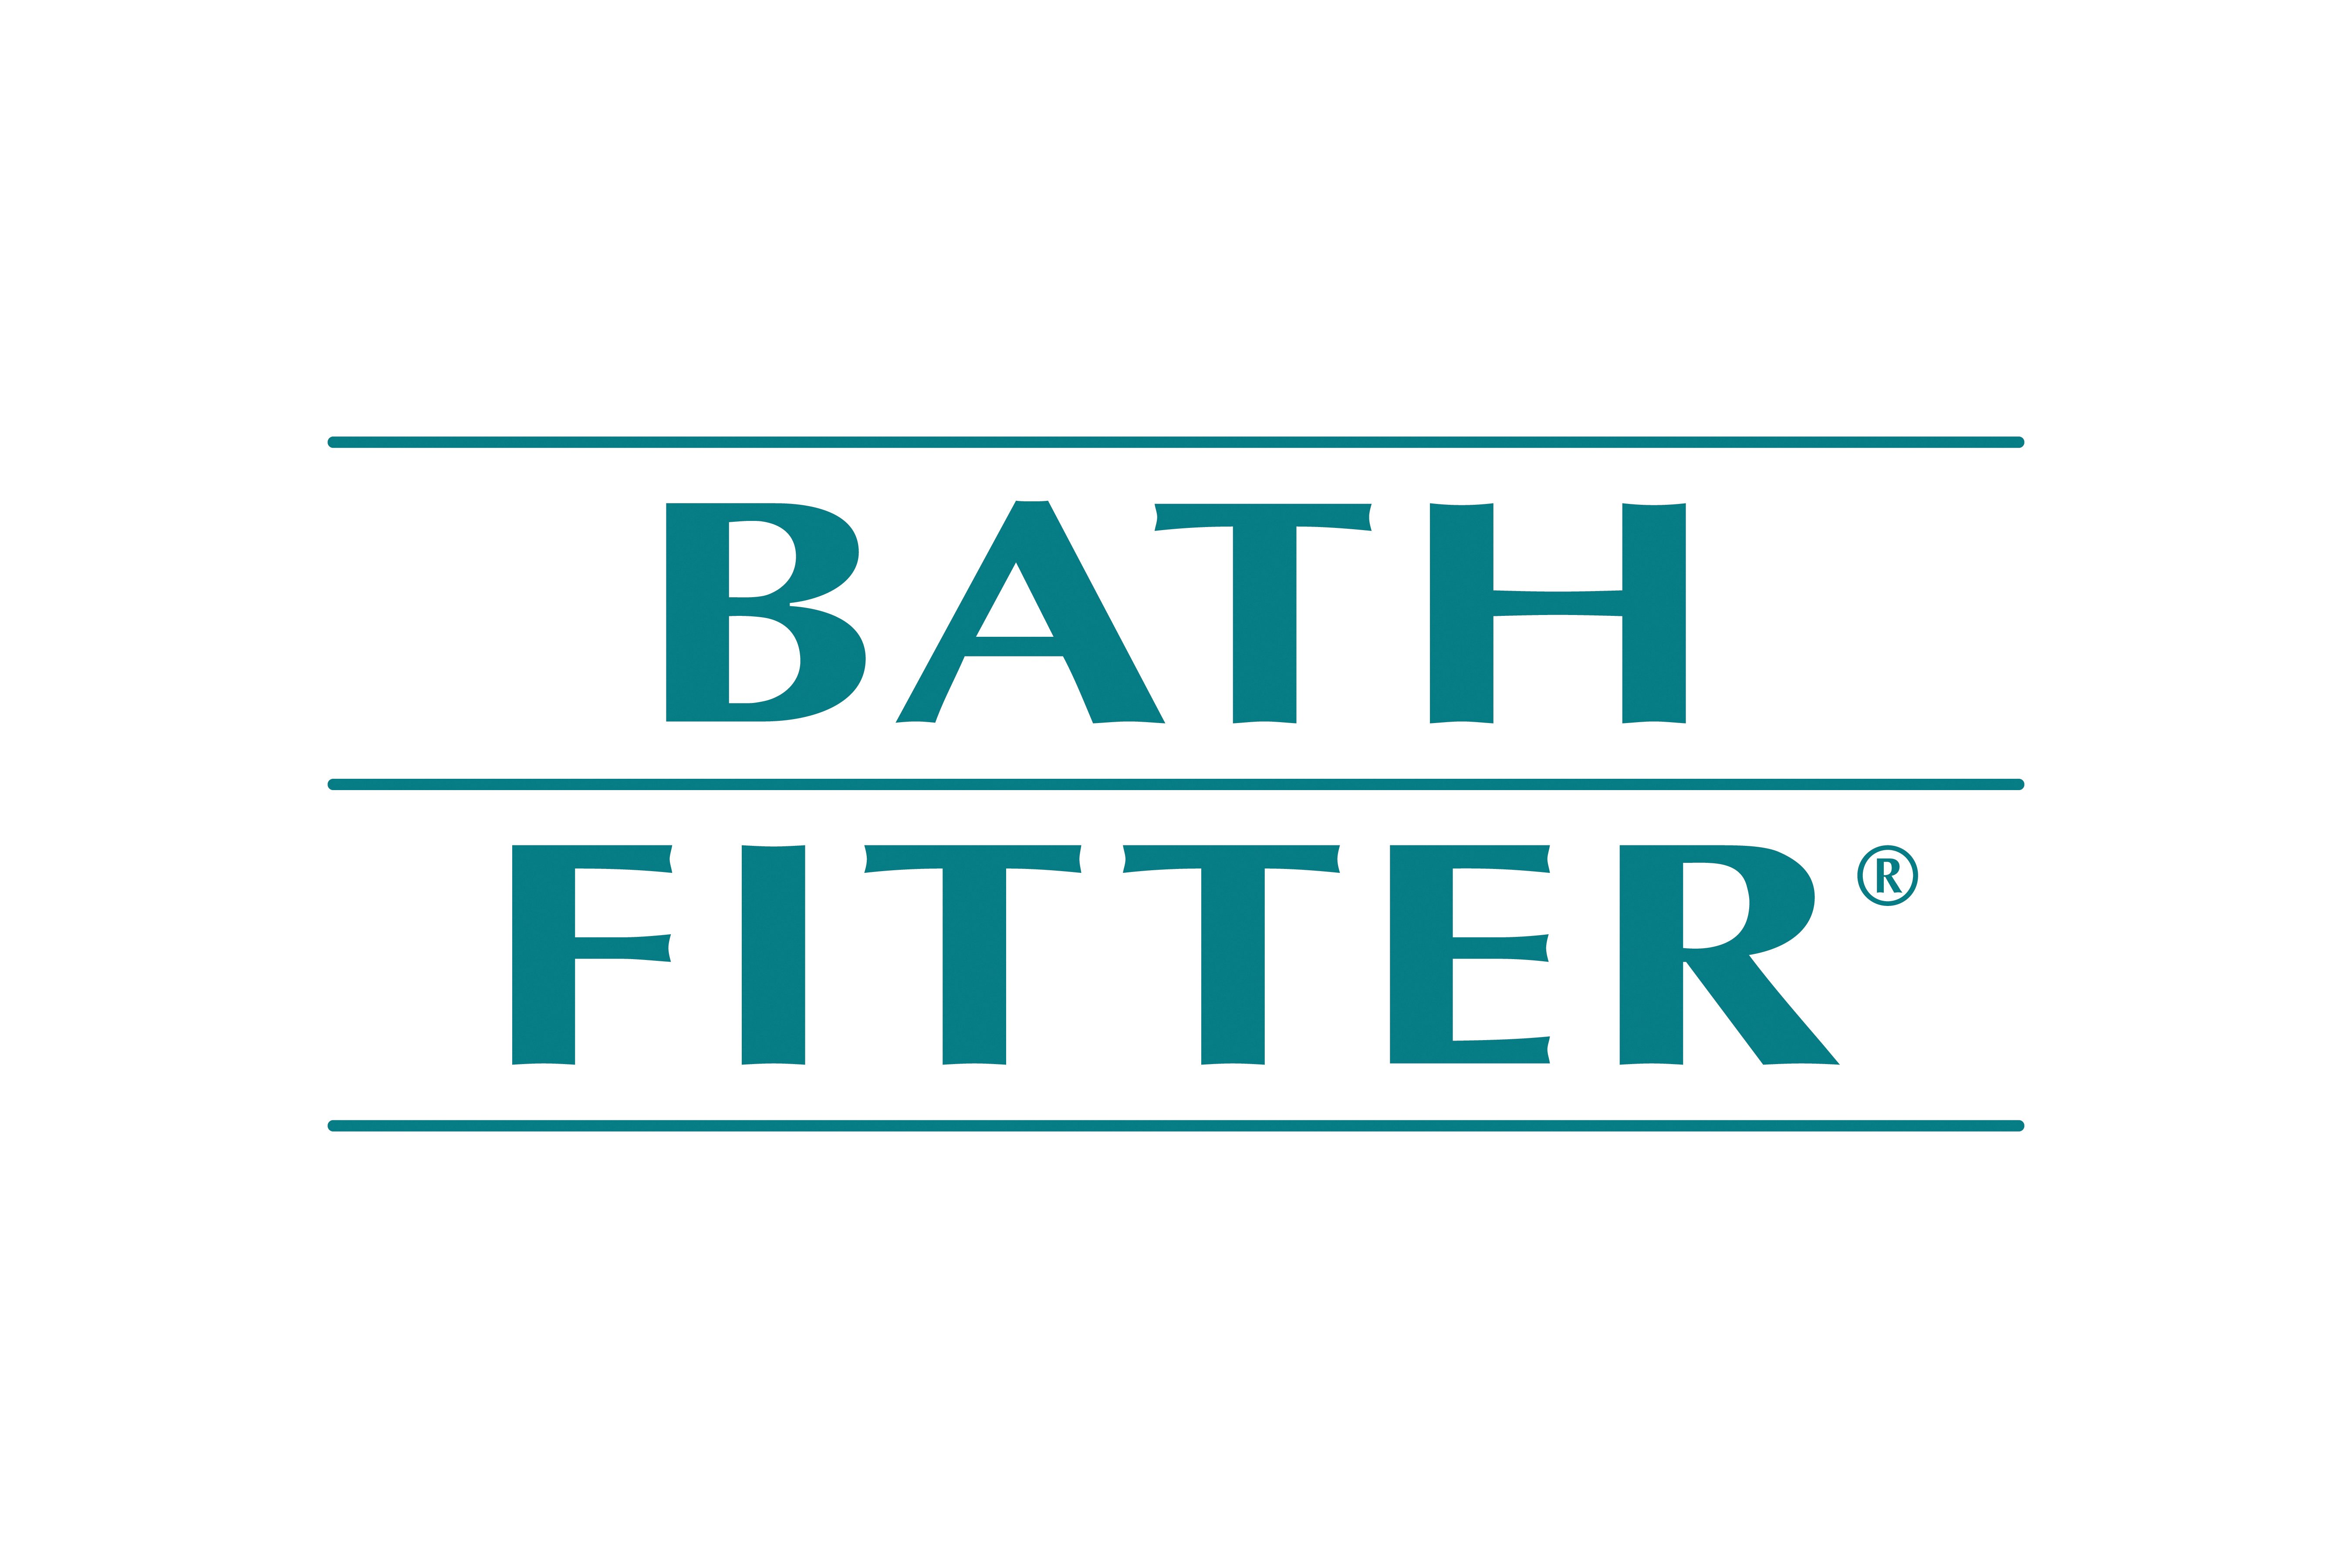 Bath Builders, LLC, DBA Bath Fitter Logo